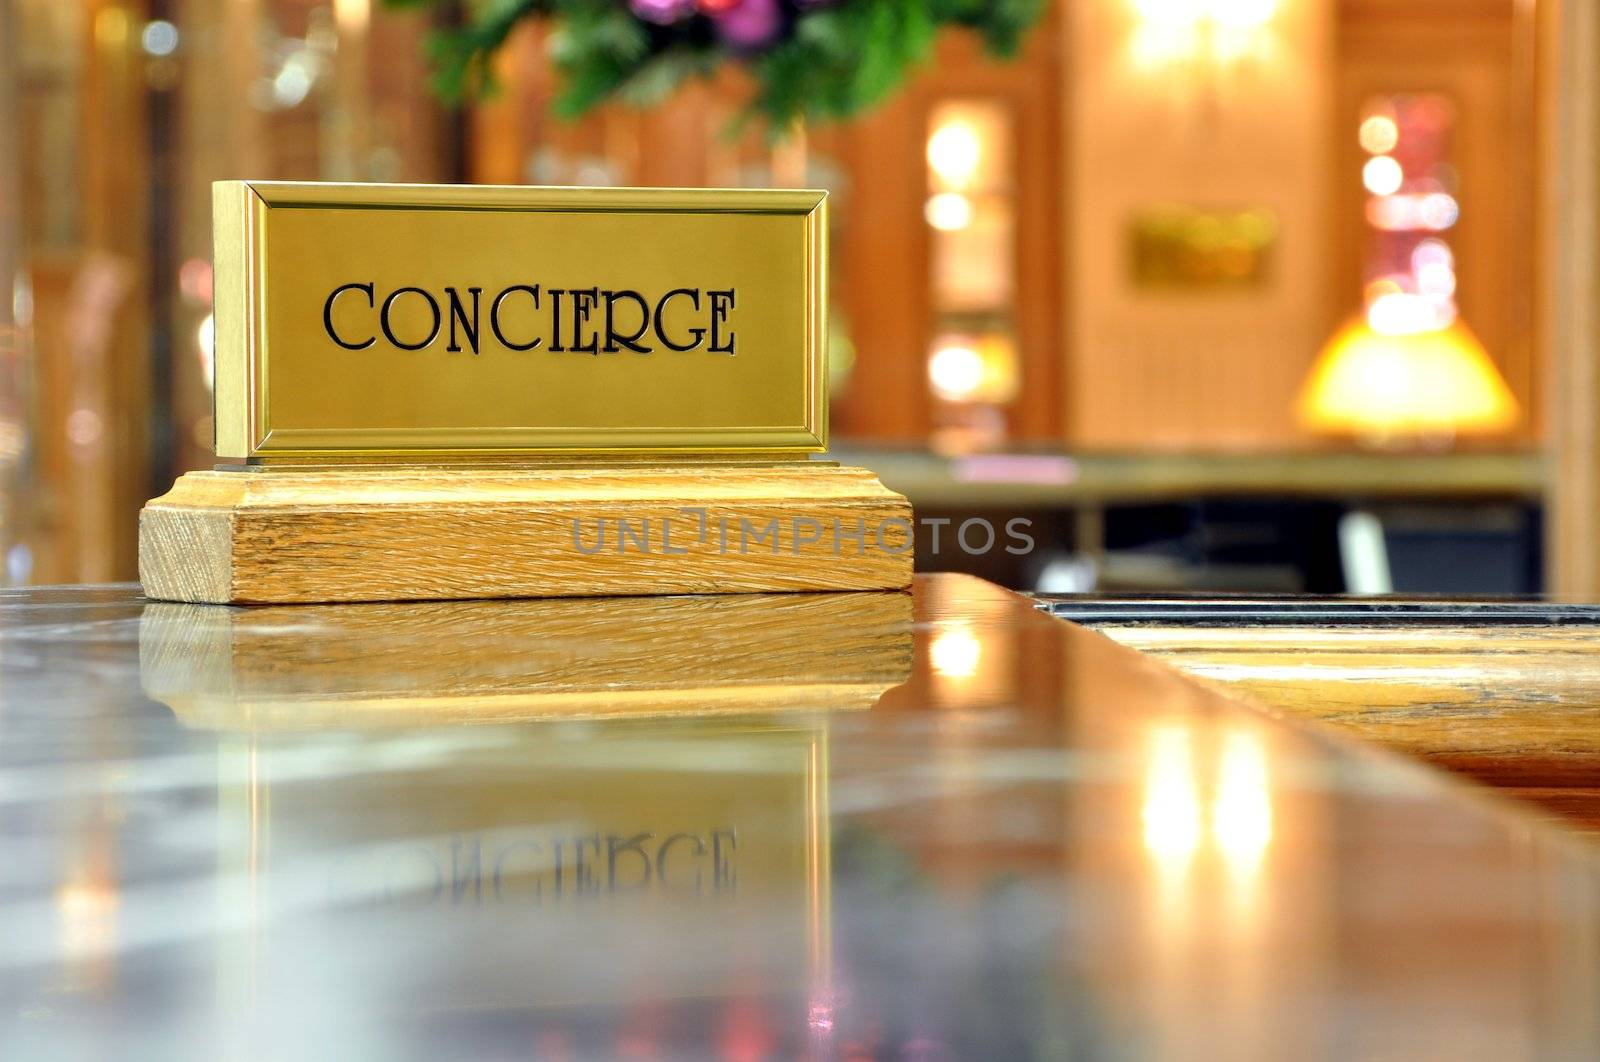 Concierge desk by dutourdumonde